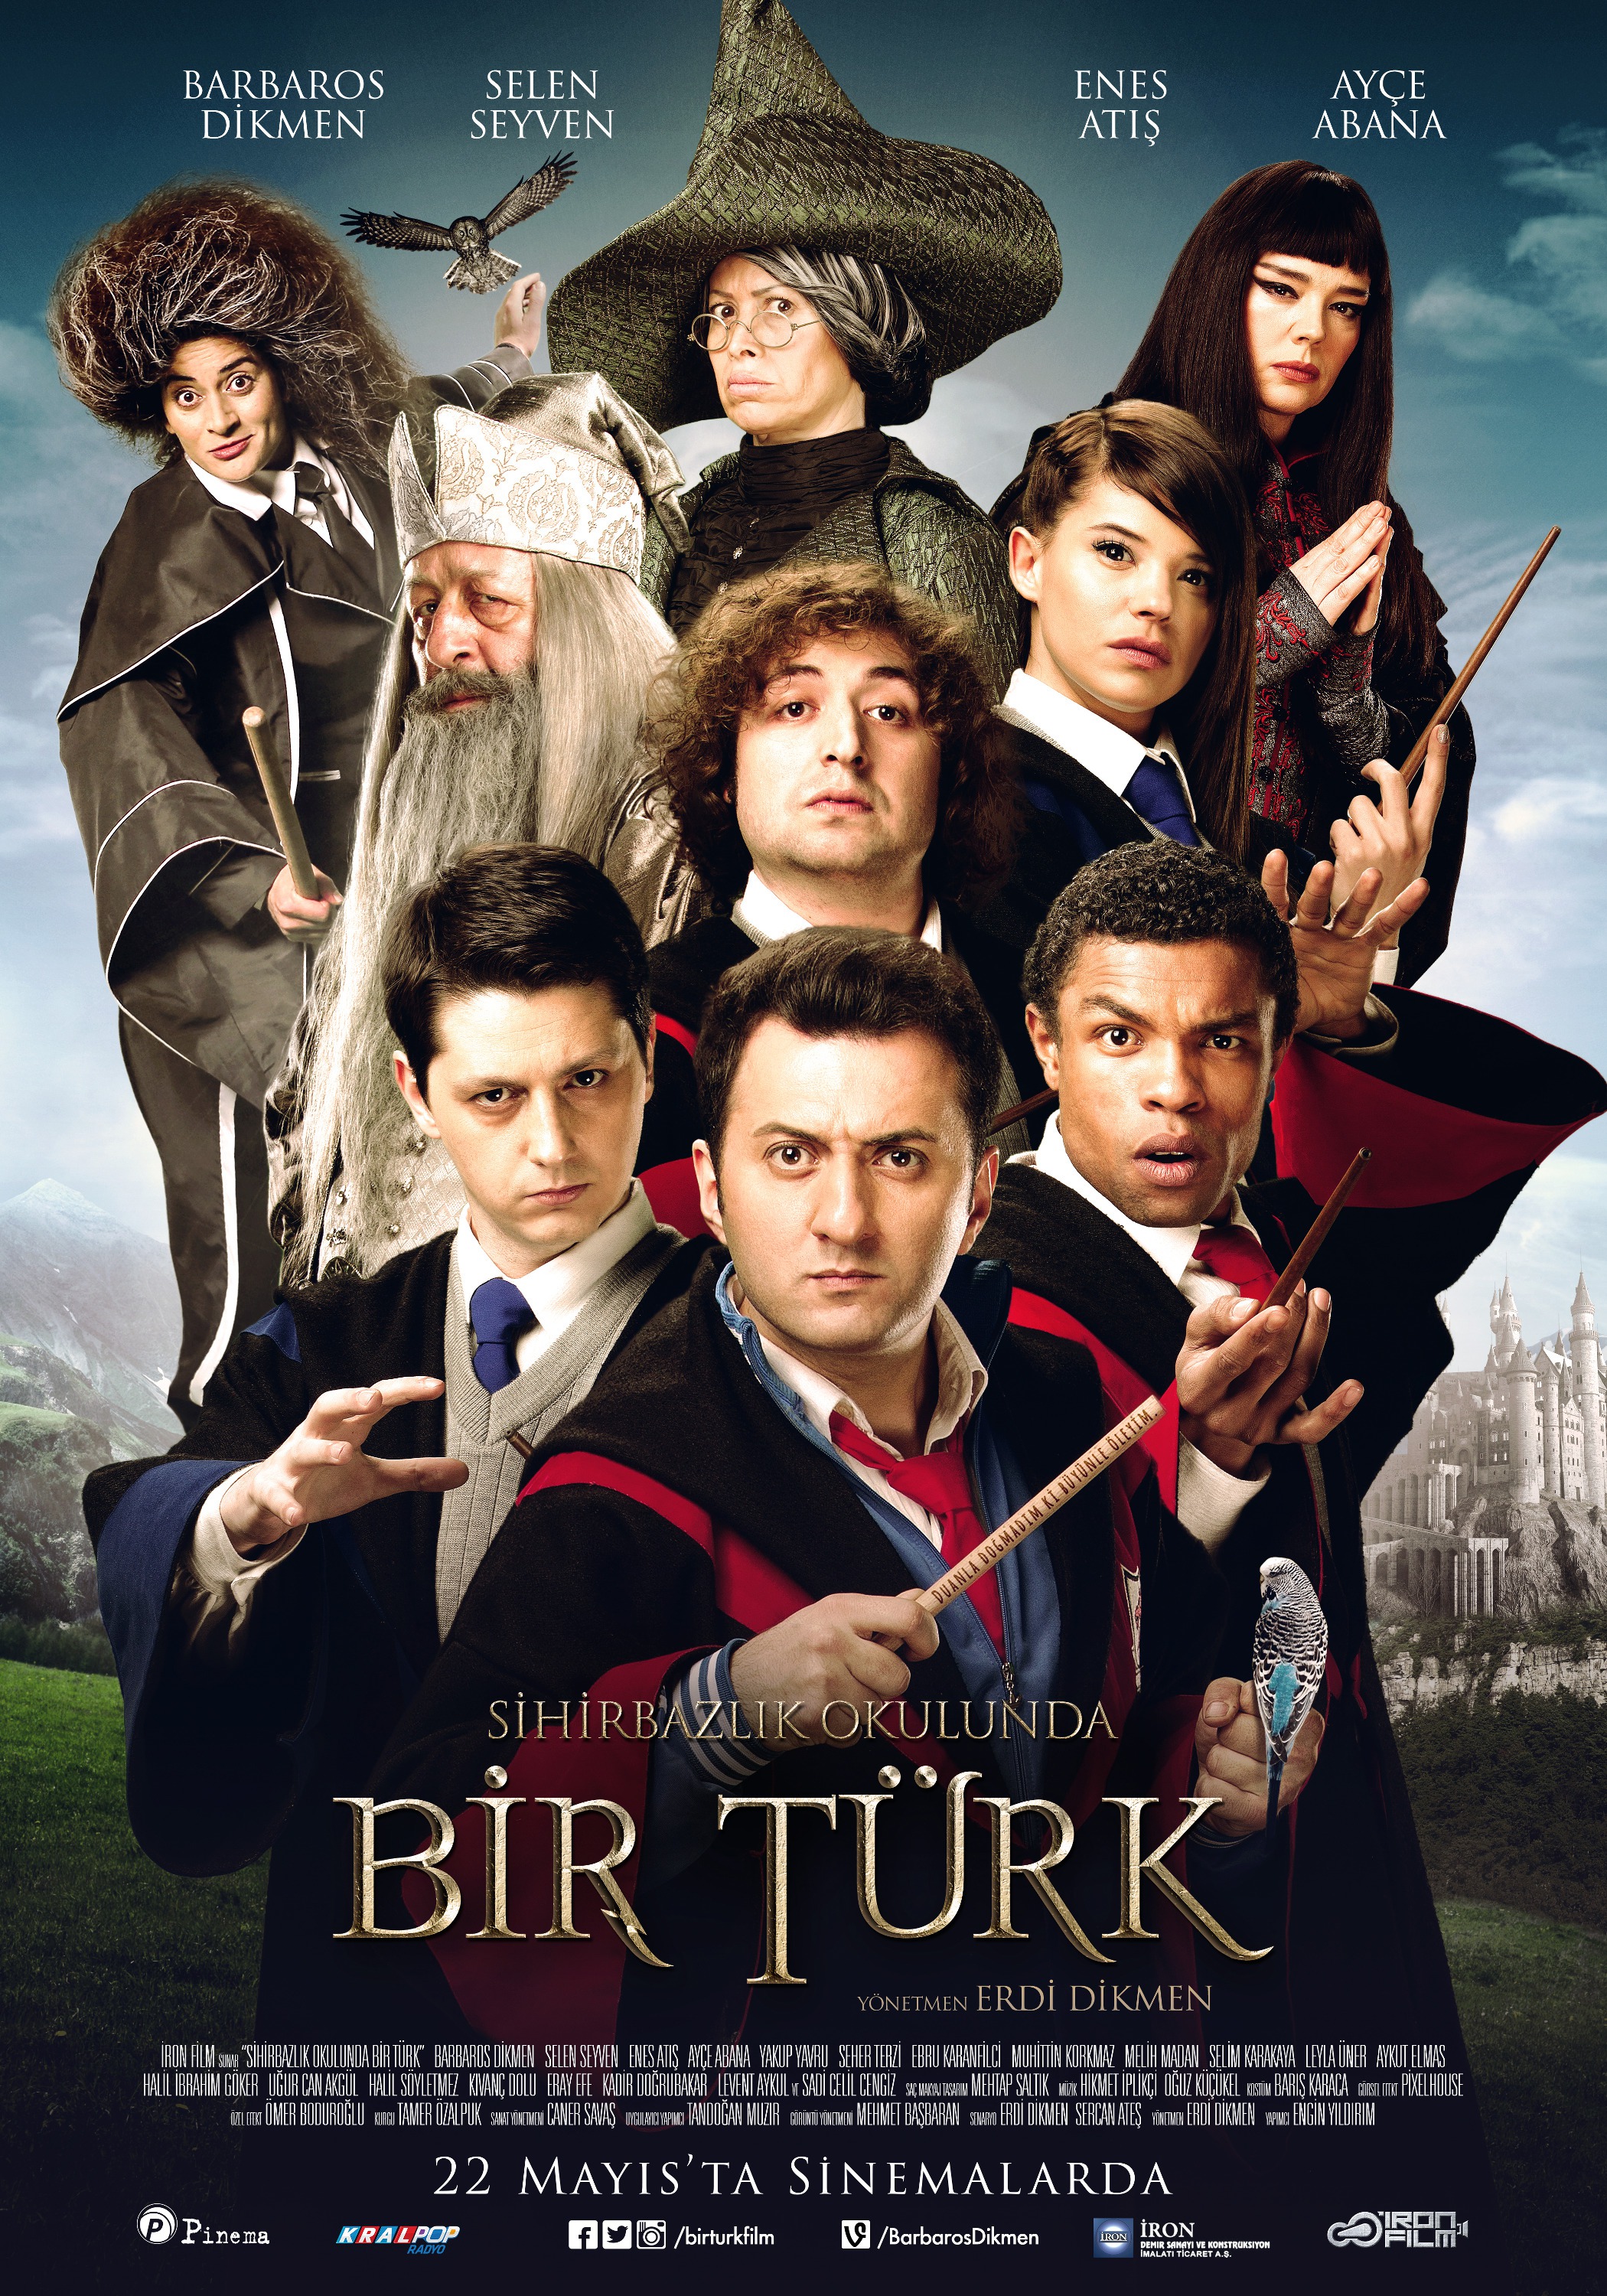 Mega Sized Movie Poster Image for Sihirbazlik Okulunda Bir Türk 